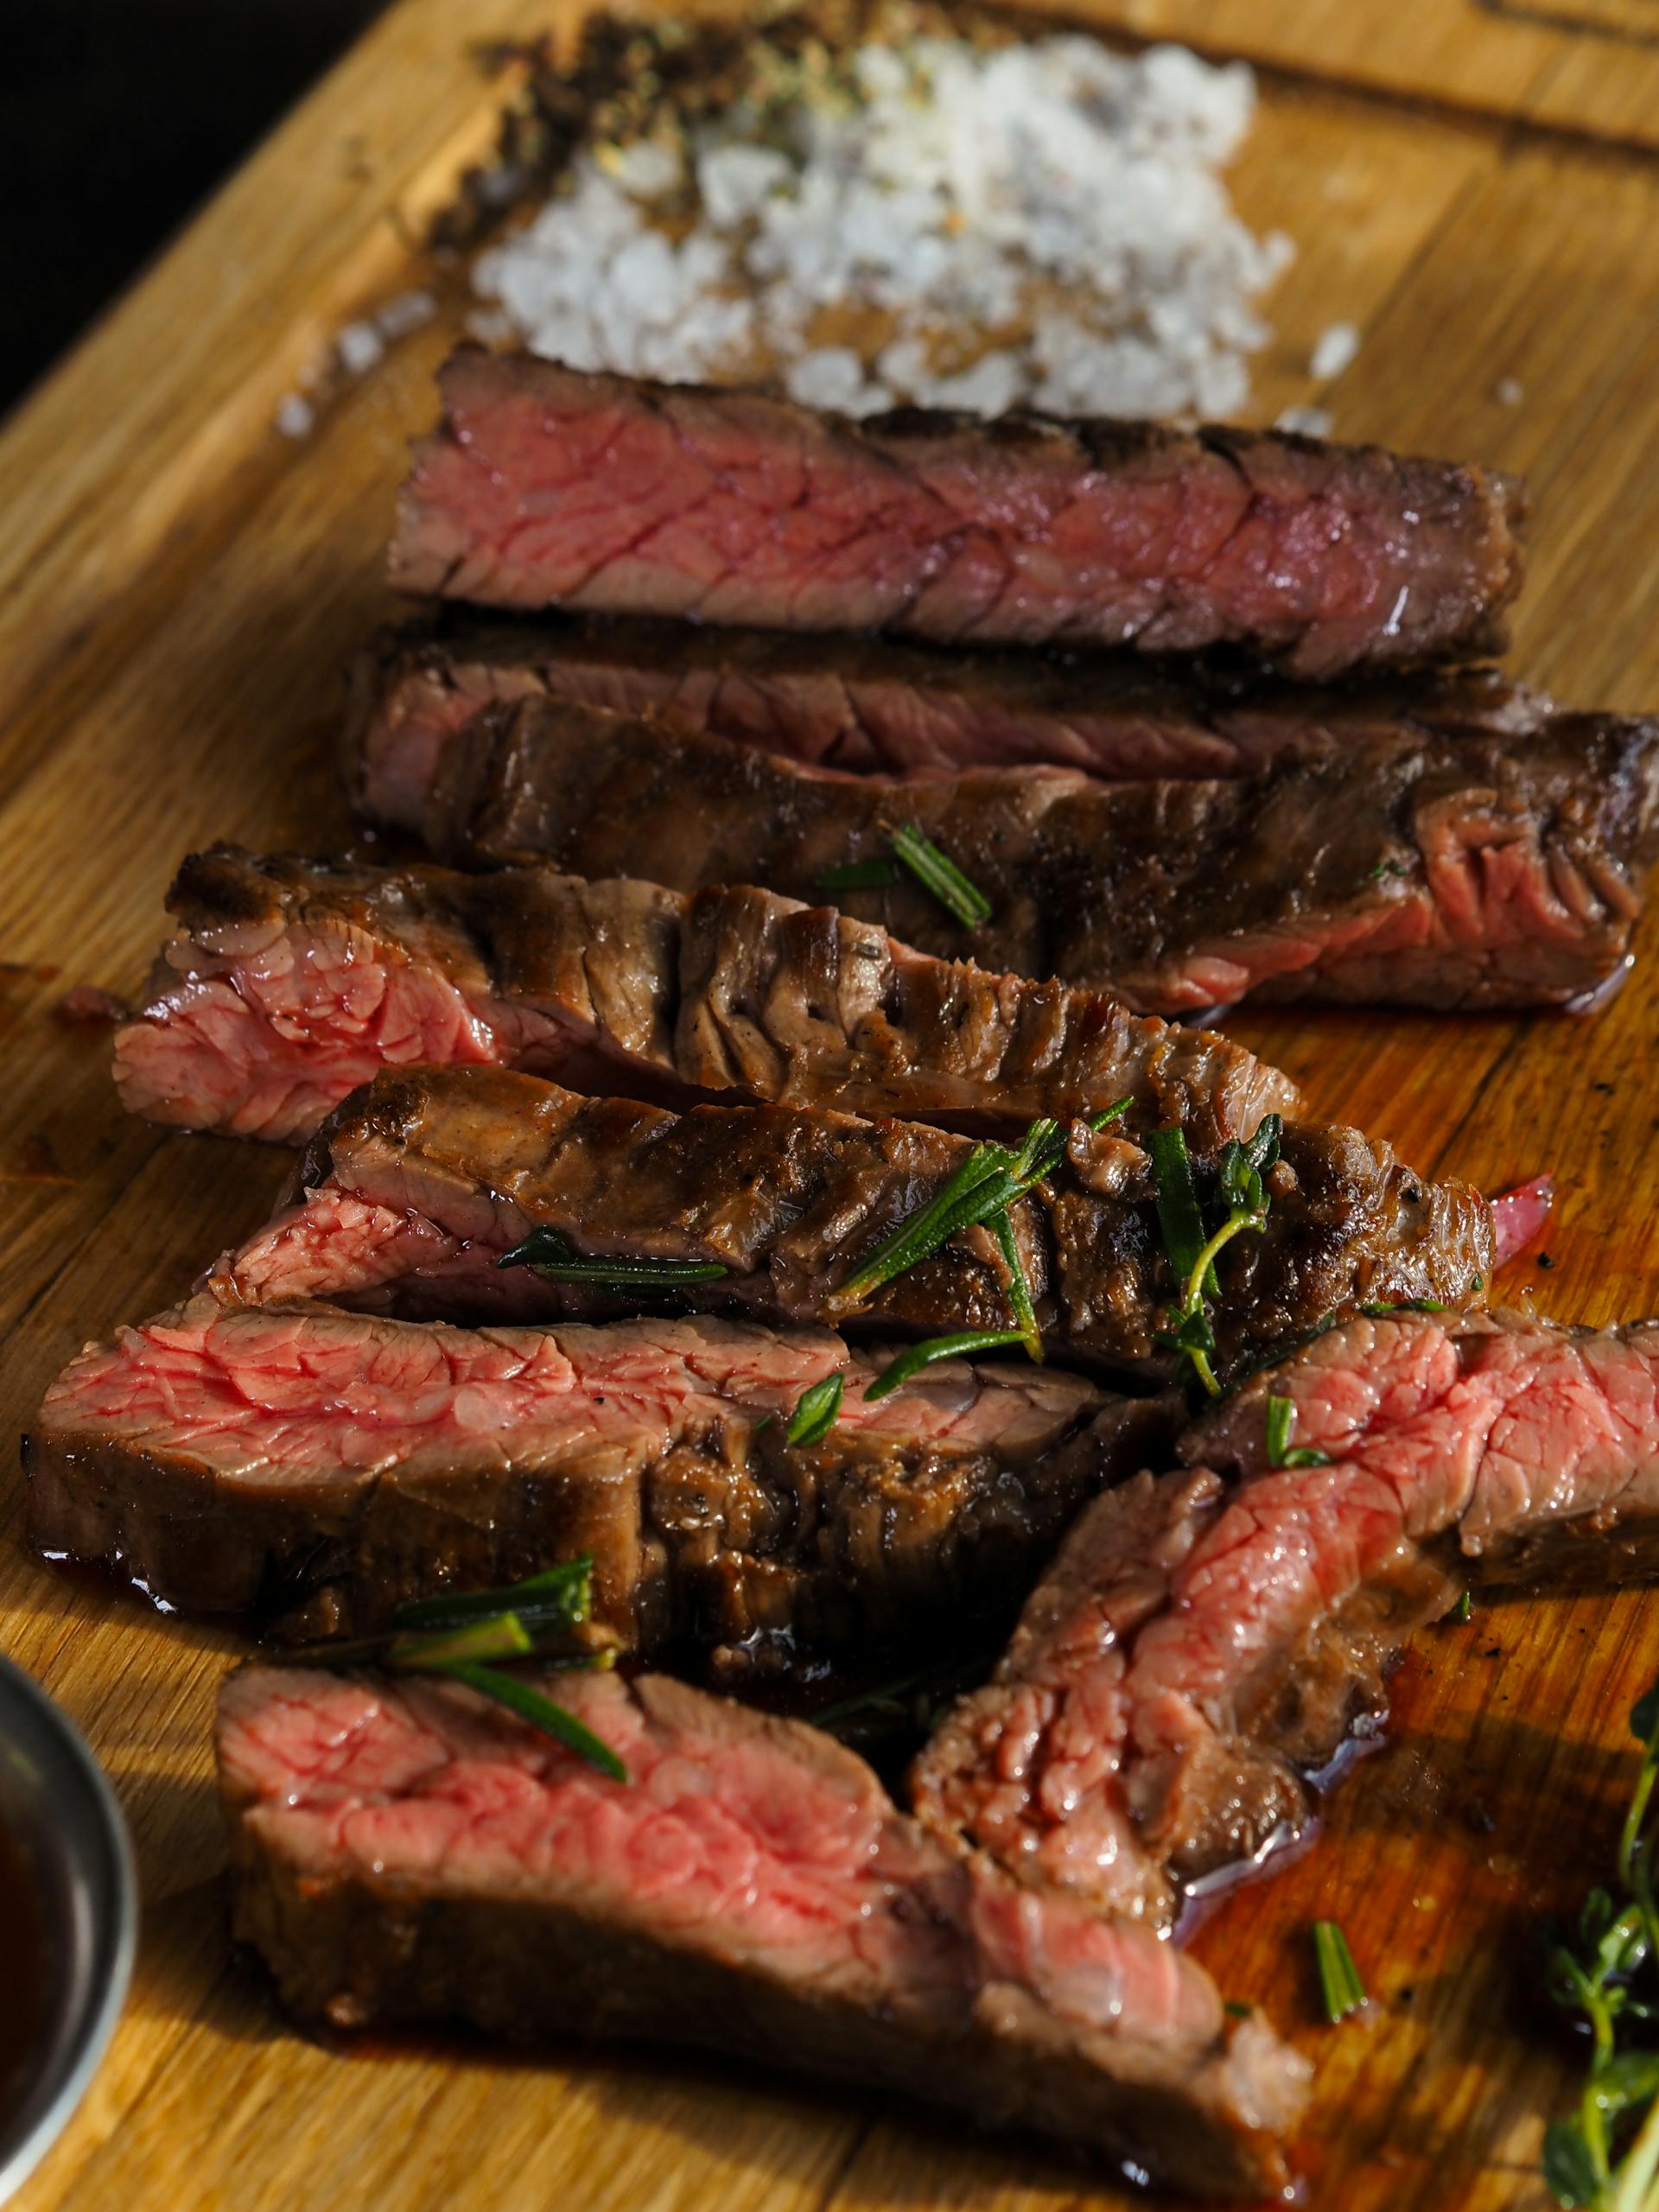 Steak on a board | Source: Pexels